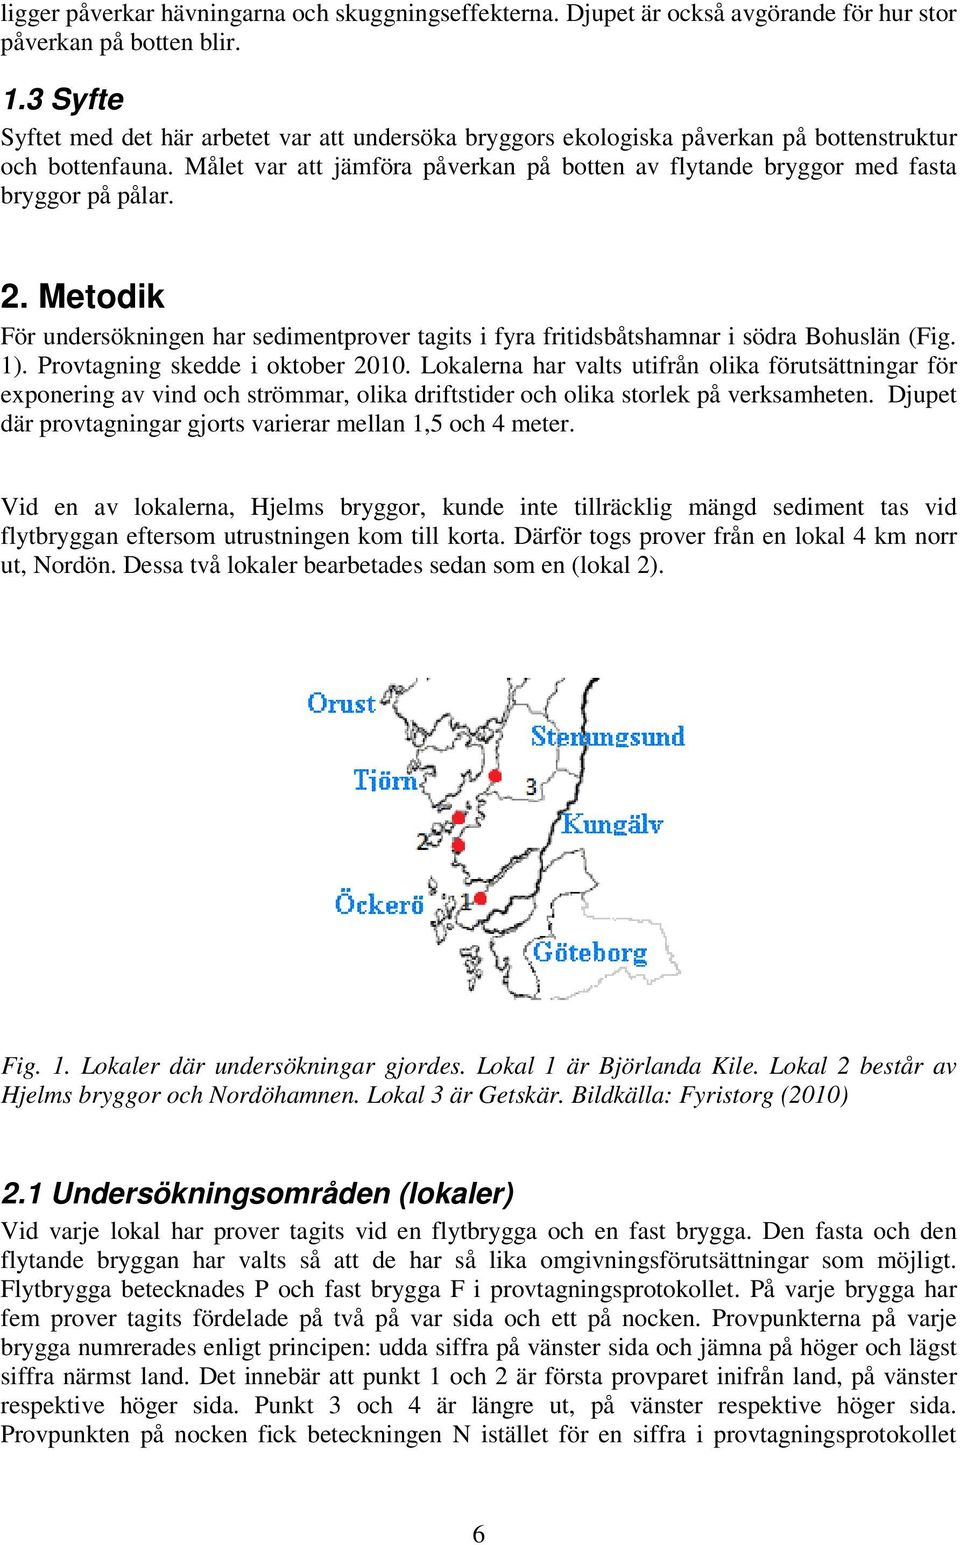 Målet var att jämföra påverkan på botten av flytande bryggor med fasta bryggor på pålar. 2. Metodik För undersökningen har sedimentprover tagits i fyra fritidsbåtshamnar i södra Bohuslän (Fig. 1).